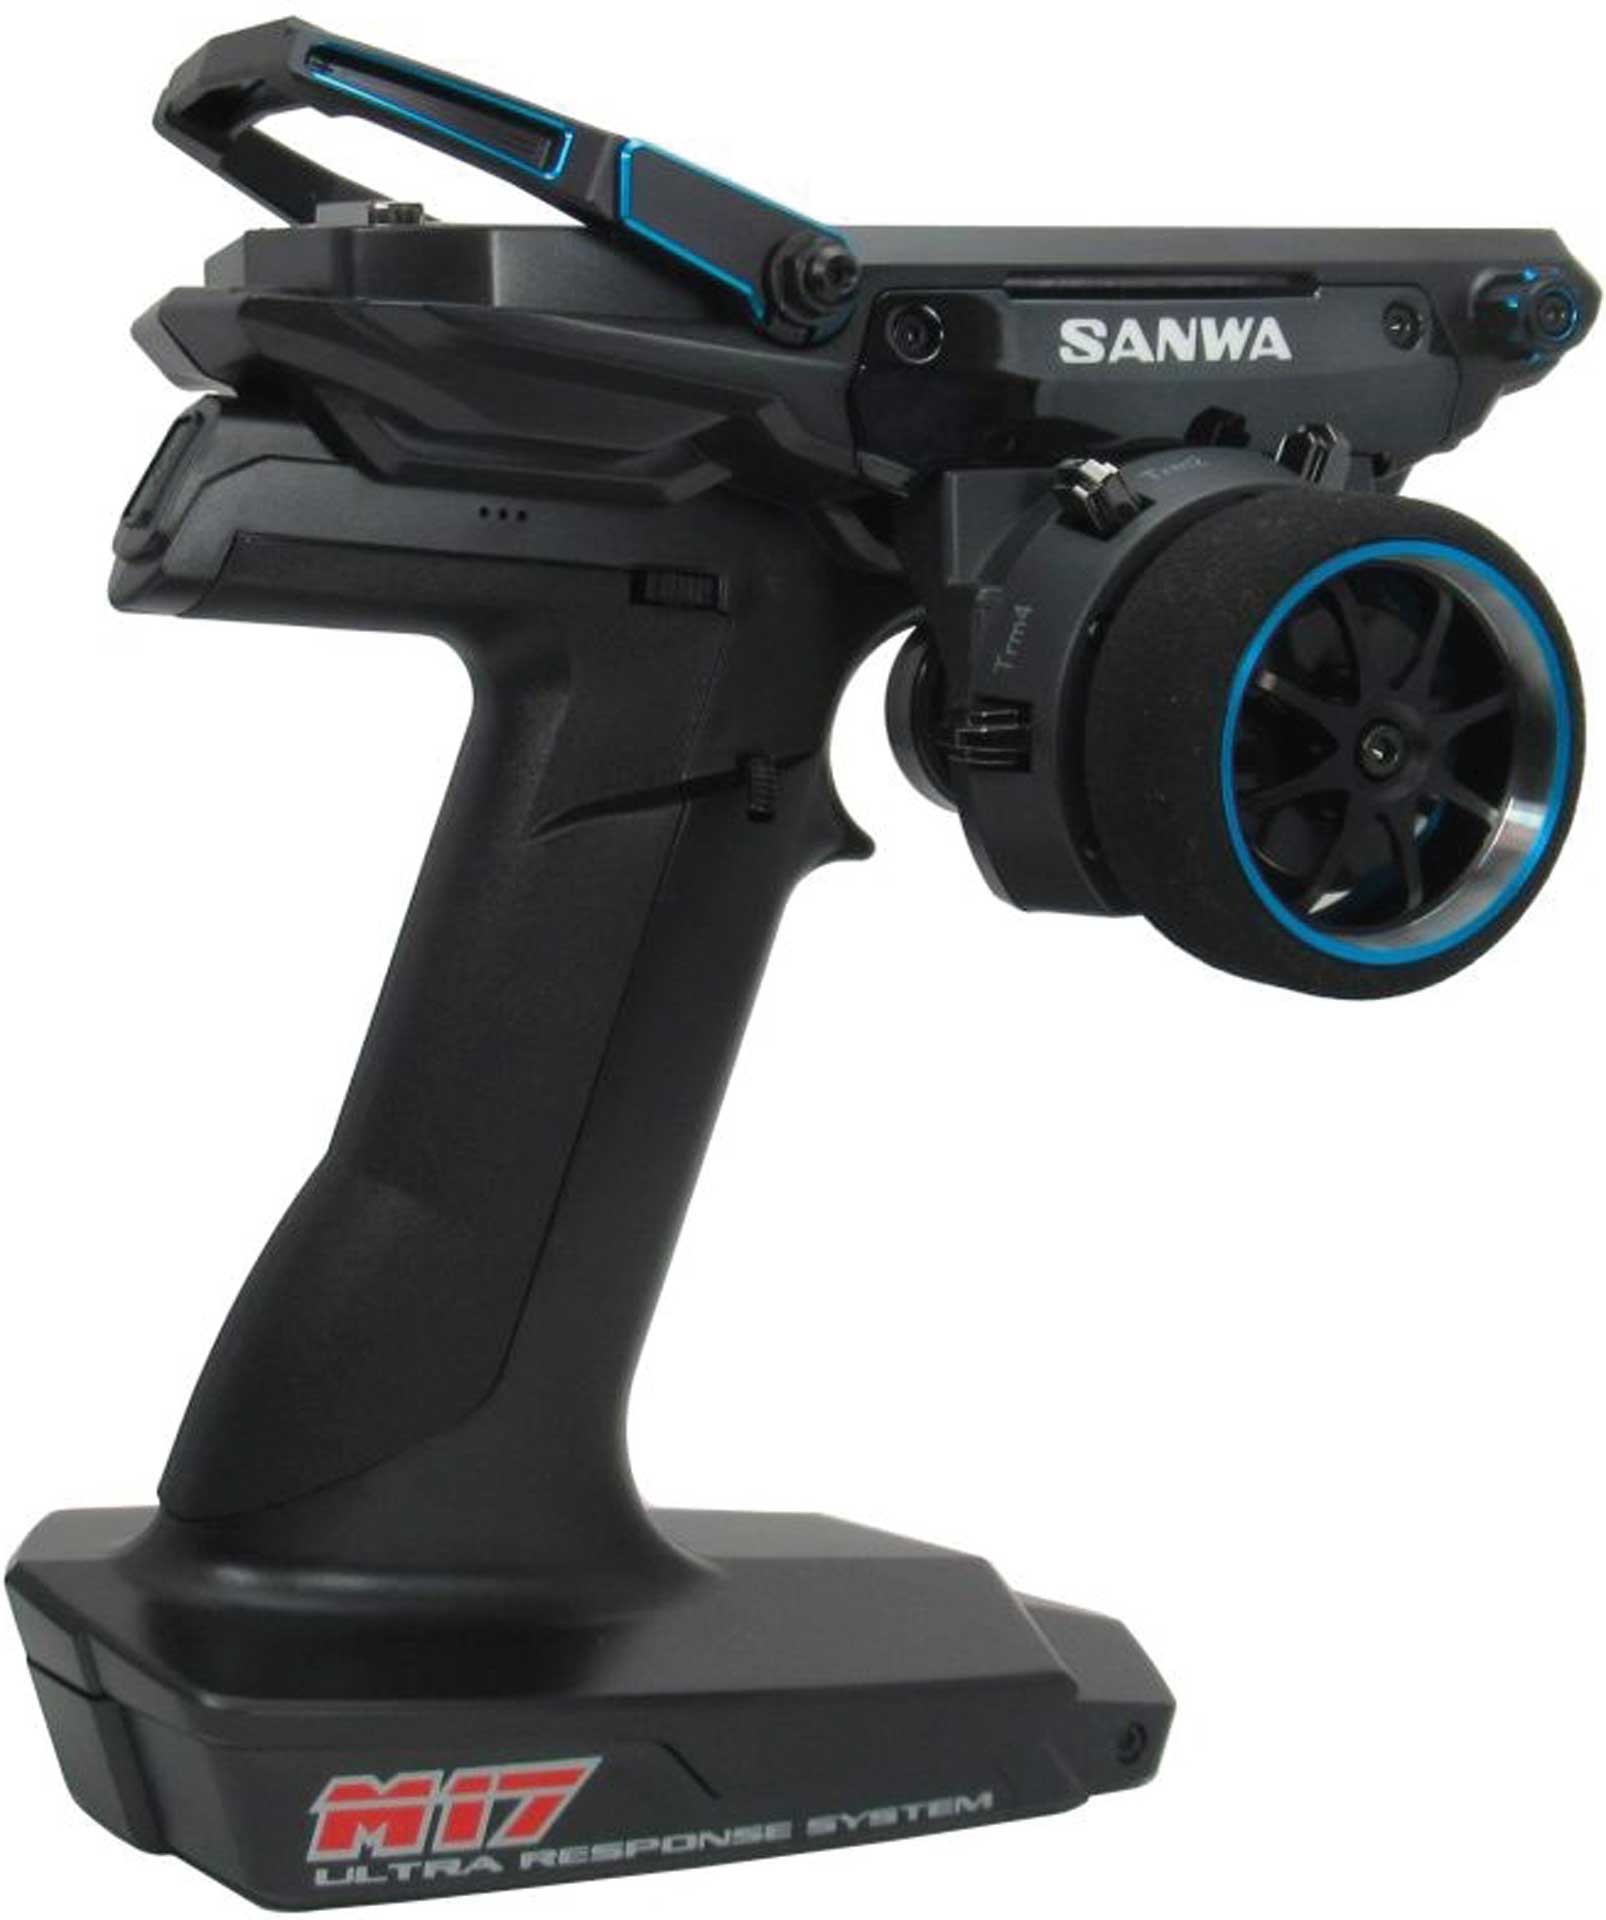 SANWA M17 - RX-493I 2.4GHZ FH5 Limited Edition Blau